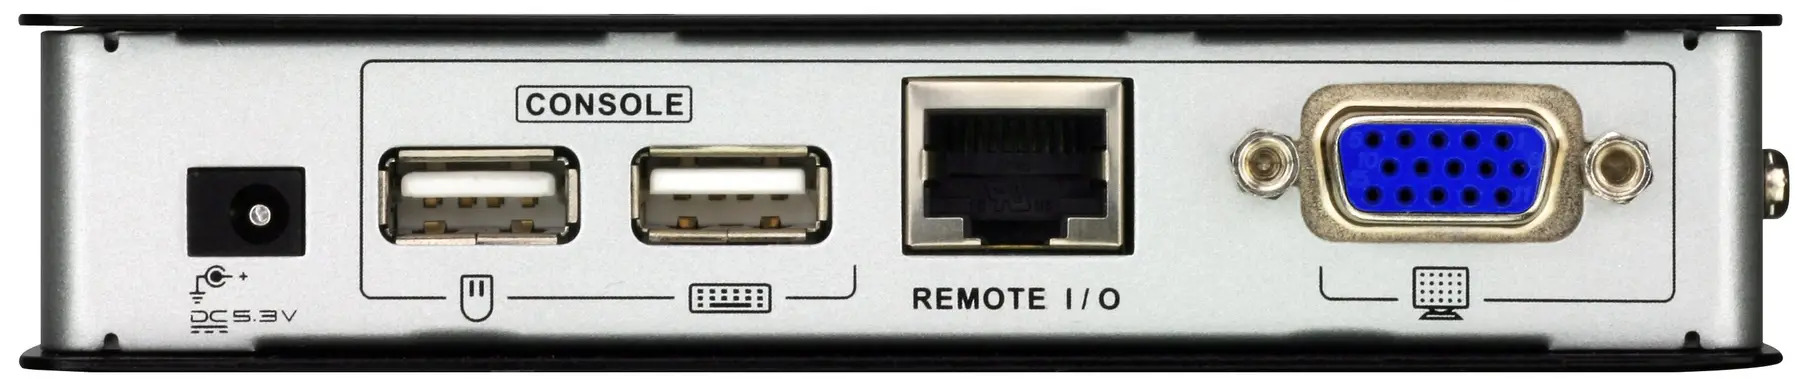 KVM-удлинитель ATEN EXT CAT5 150M USB/VGA CE700A-AT-G купить лицензию  онлайн по выгодной цене